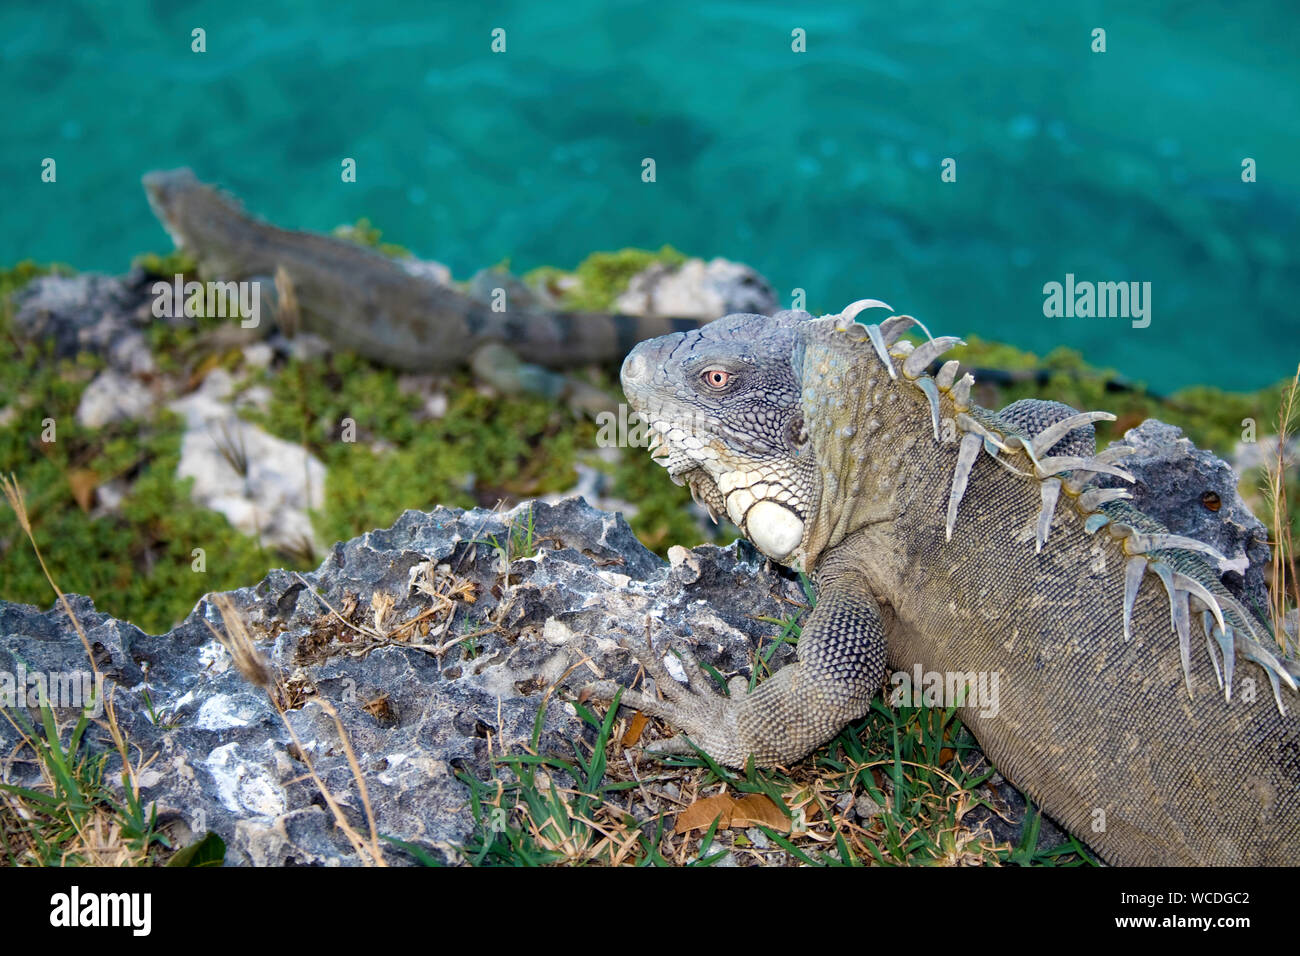 Iguane vert (Iguana iguana), partout pour trouver sur Bonaire, Antilles néerlandaises Banque D'Images